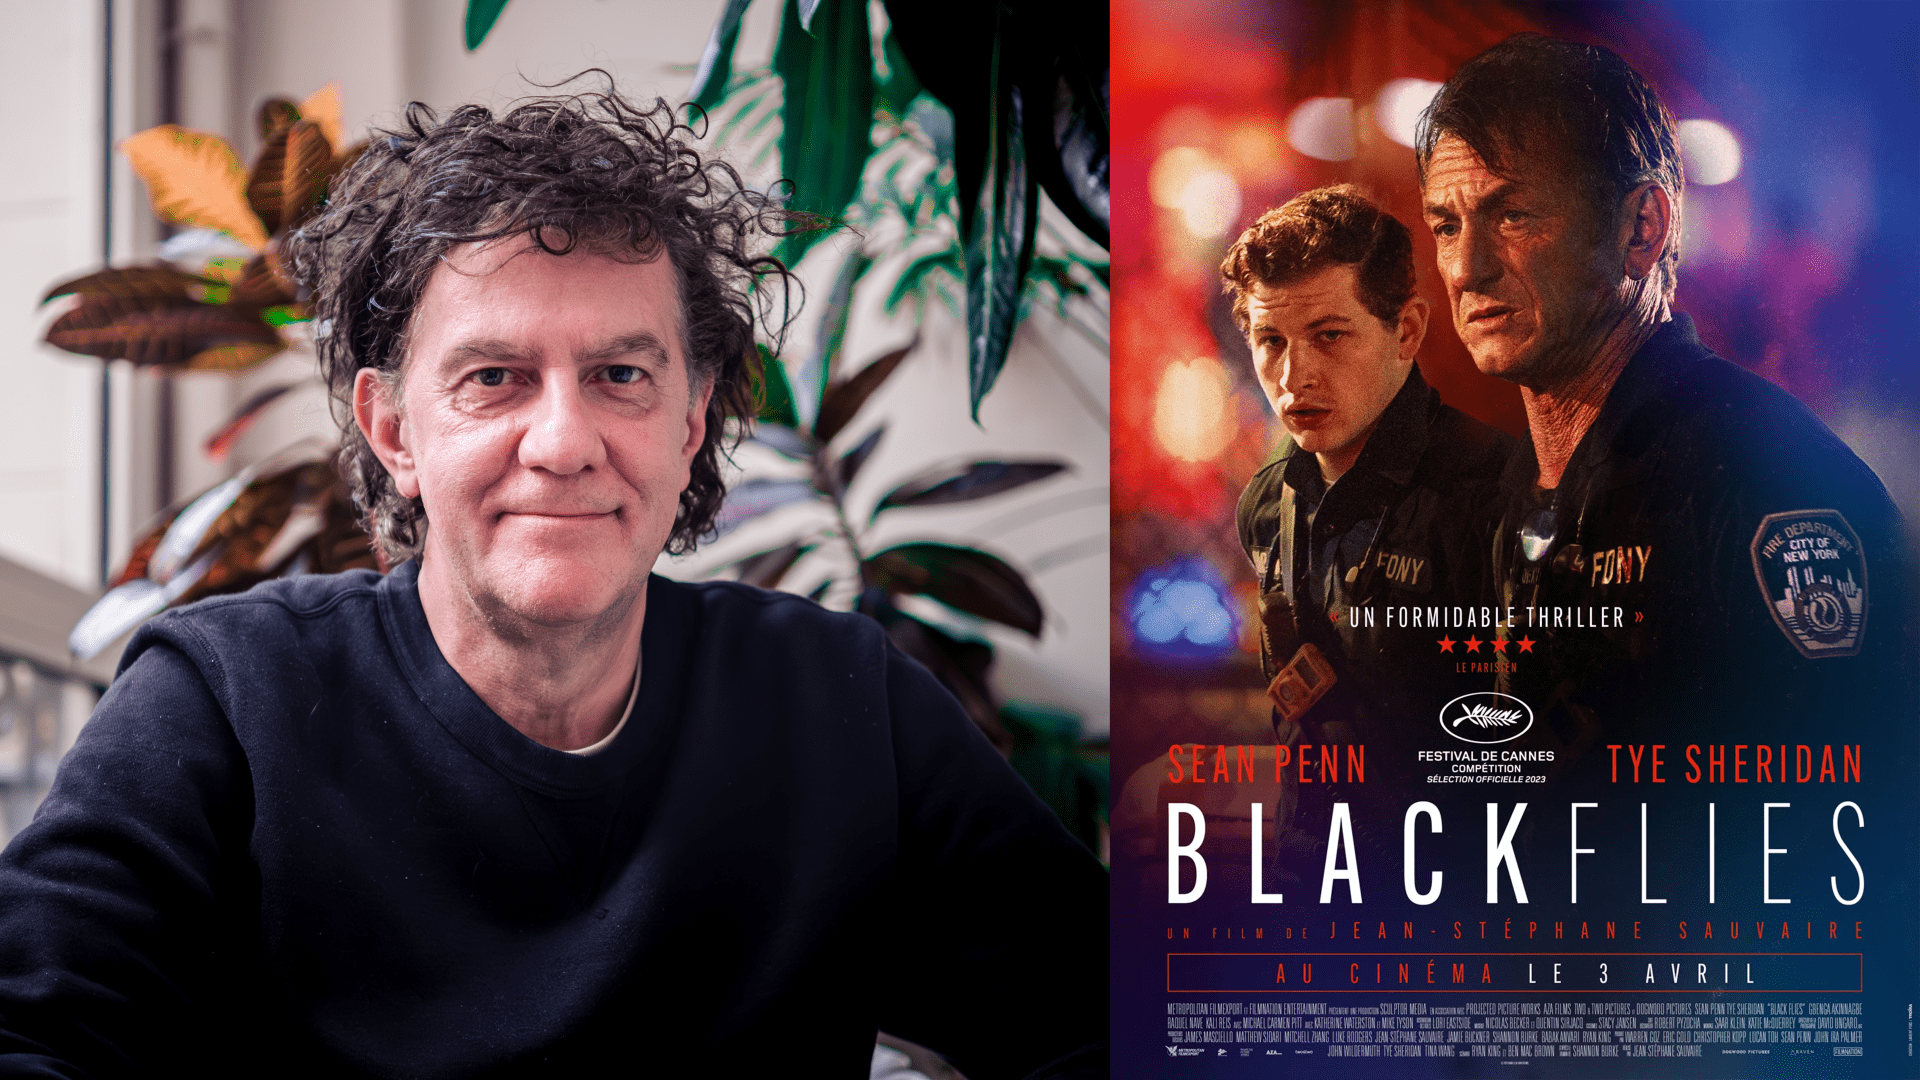 "Black Flies" : rencontre avec le réalisateur Jean-Stéphane Sauvaire